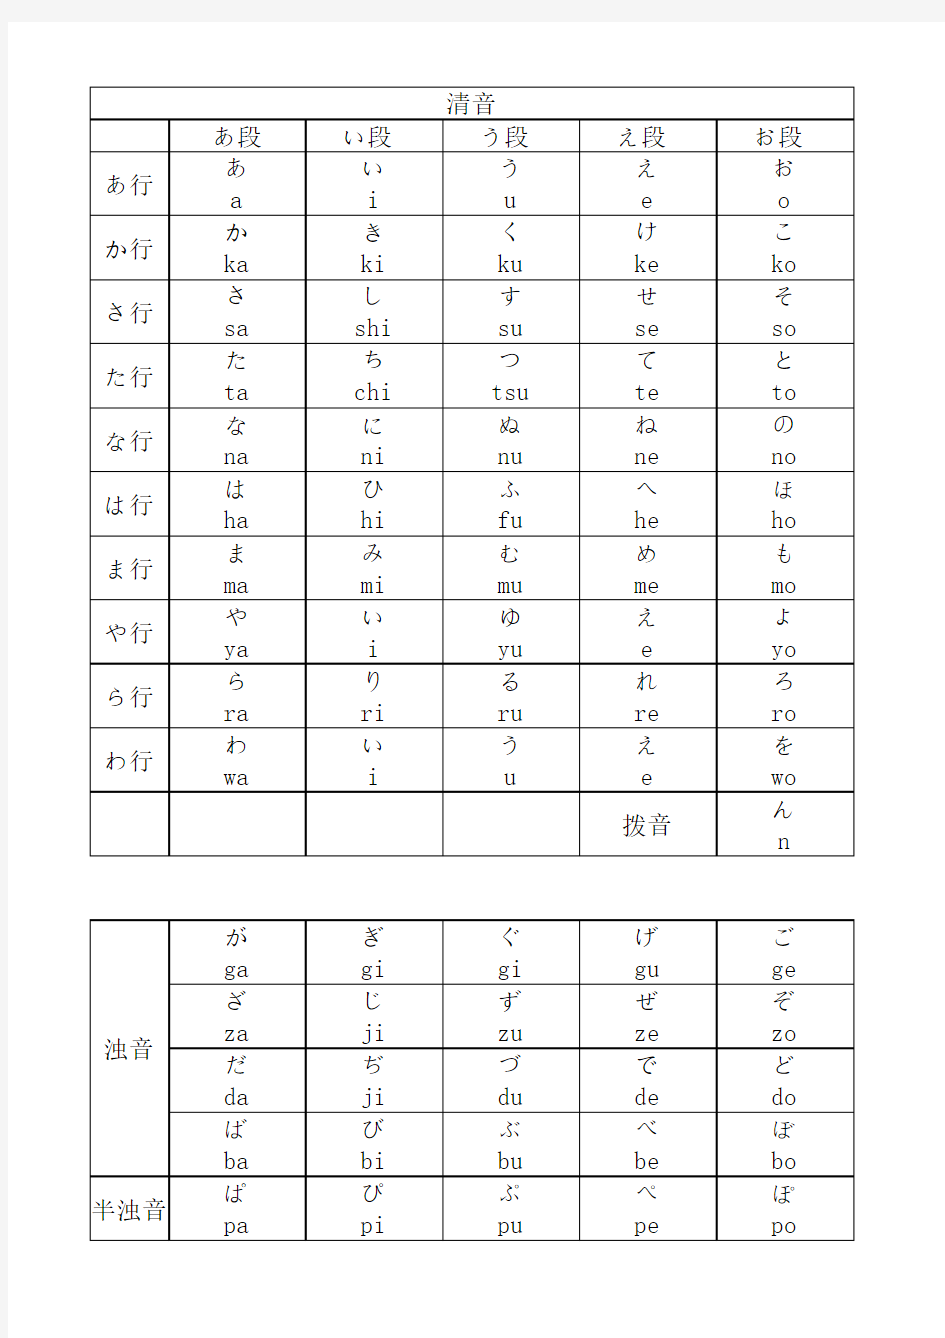 日语五十音图(包括浊音,拗音)